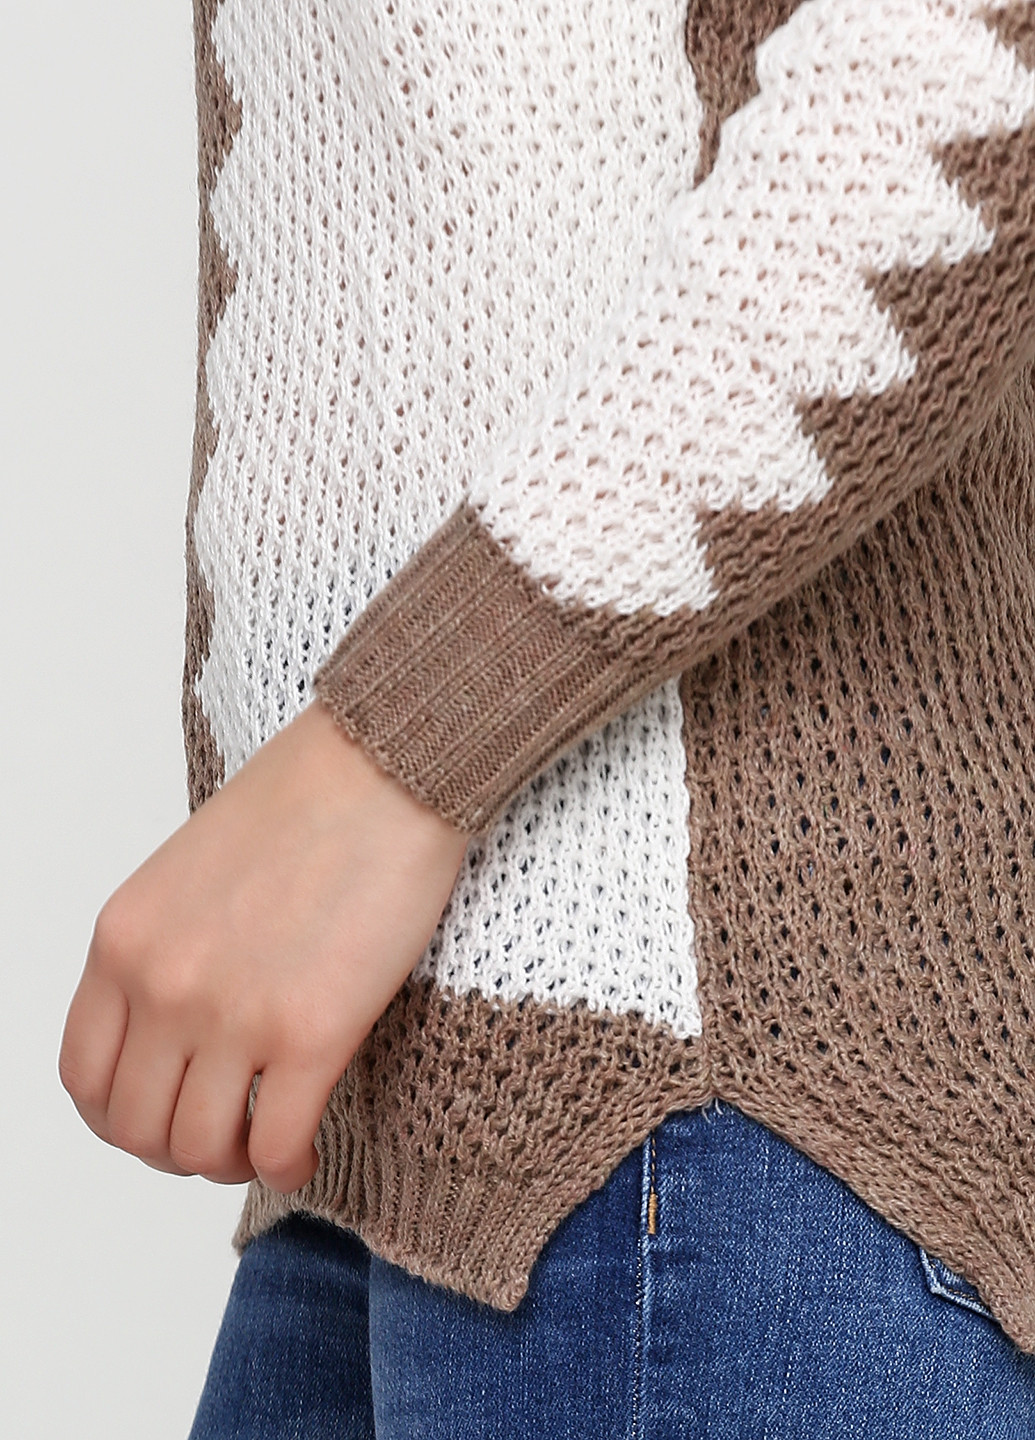 Бежевый демисезонный пуловер пуловер Massimo